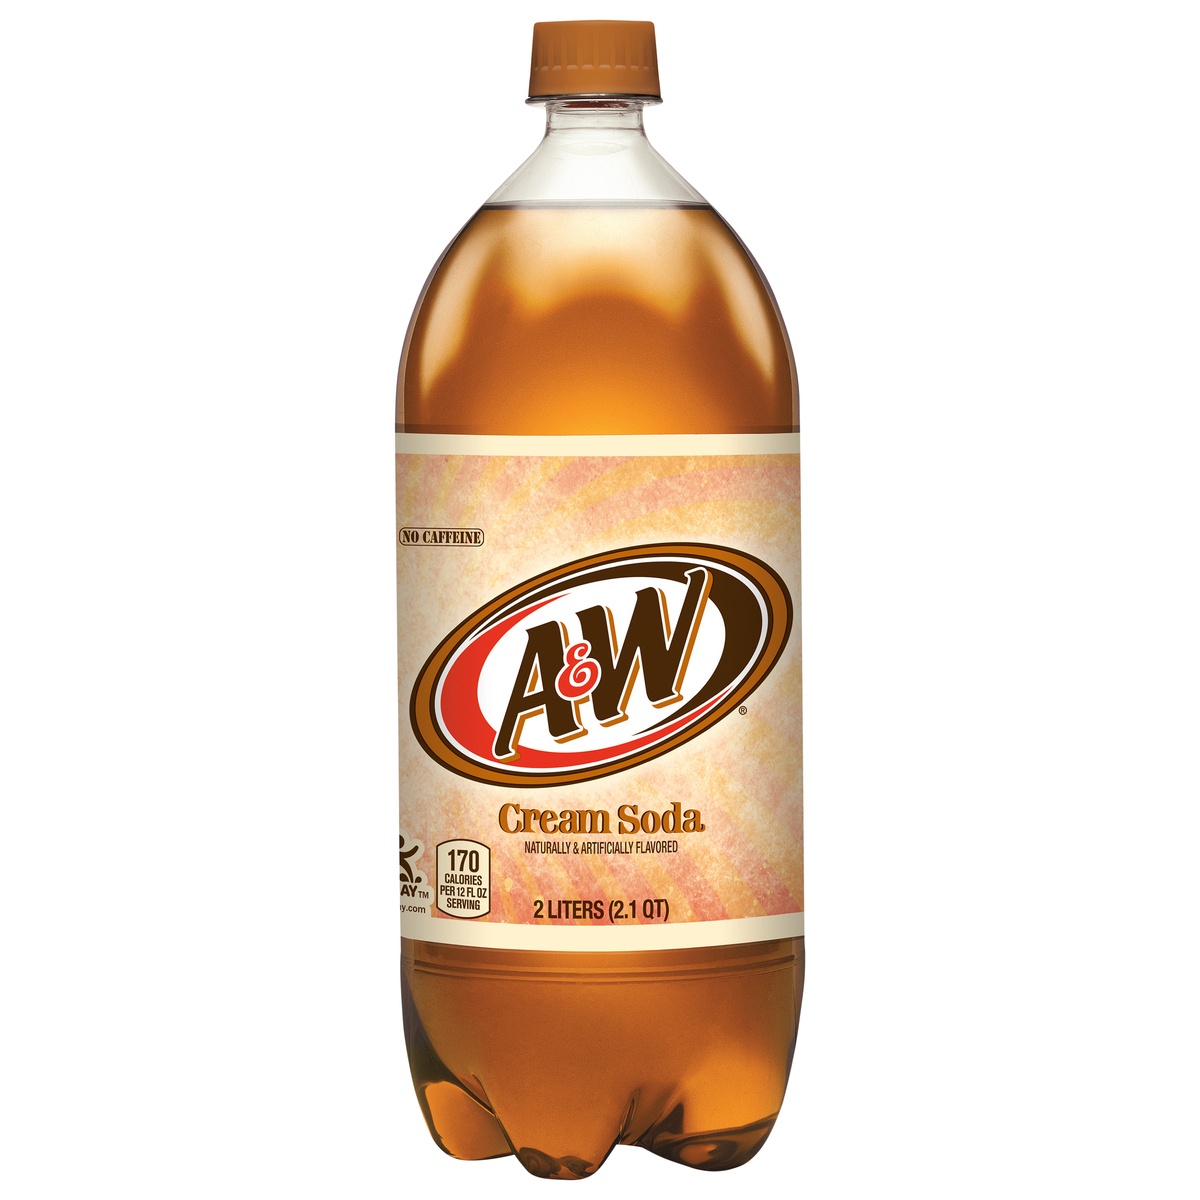 slide 1 of 2, A&W Cream Soda bottle, 2 liter